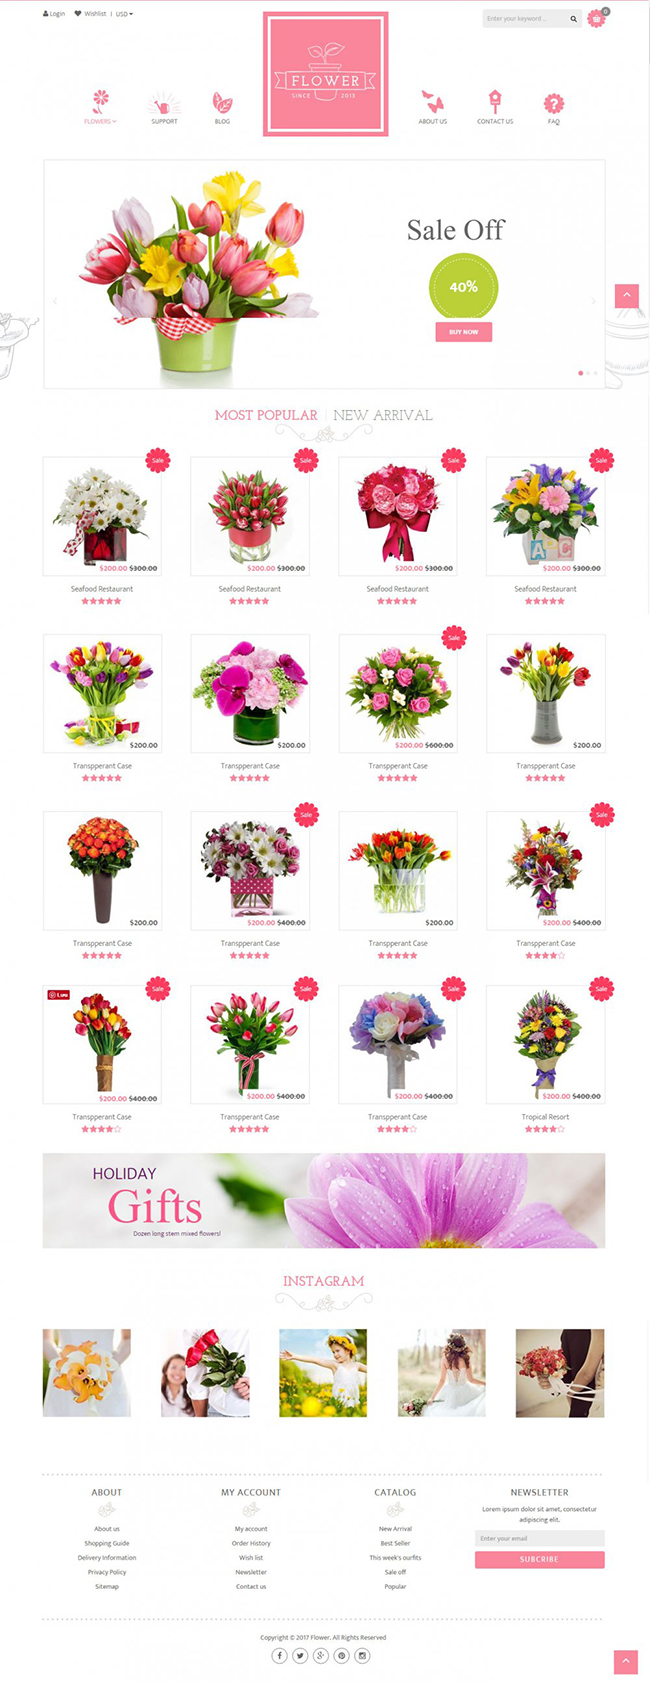 Thiết kế web cửa hàng hoa tươi